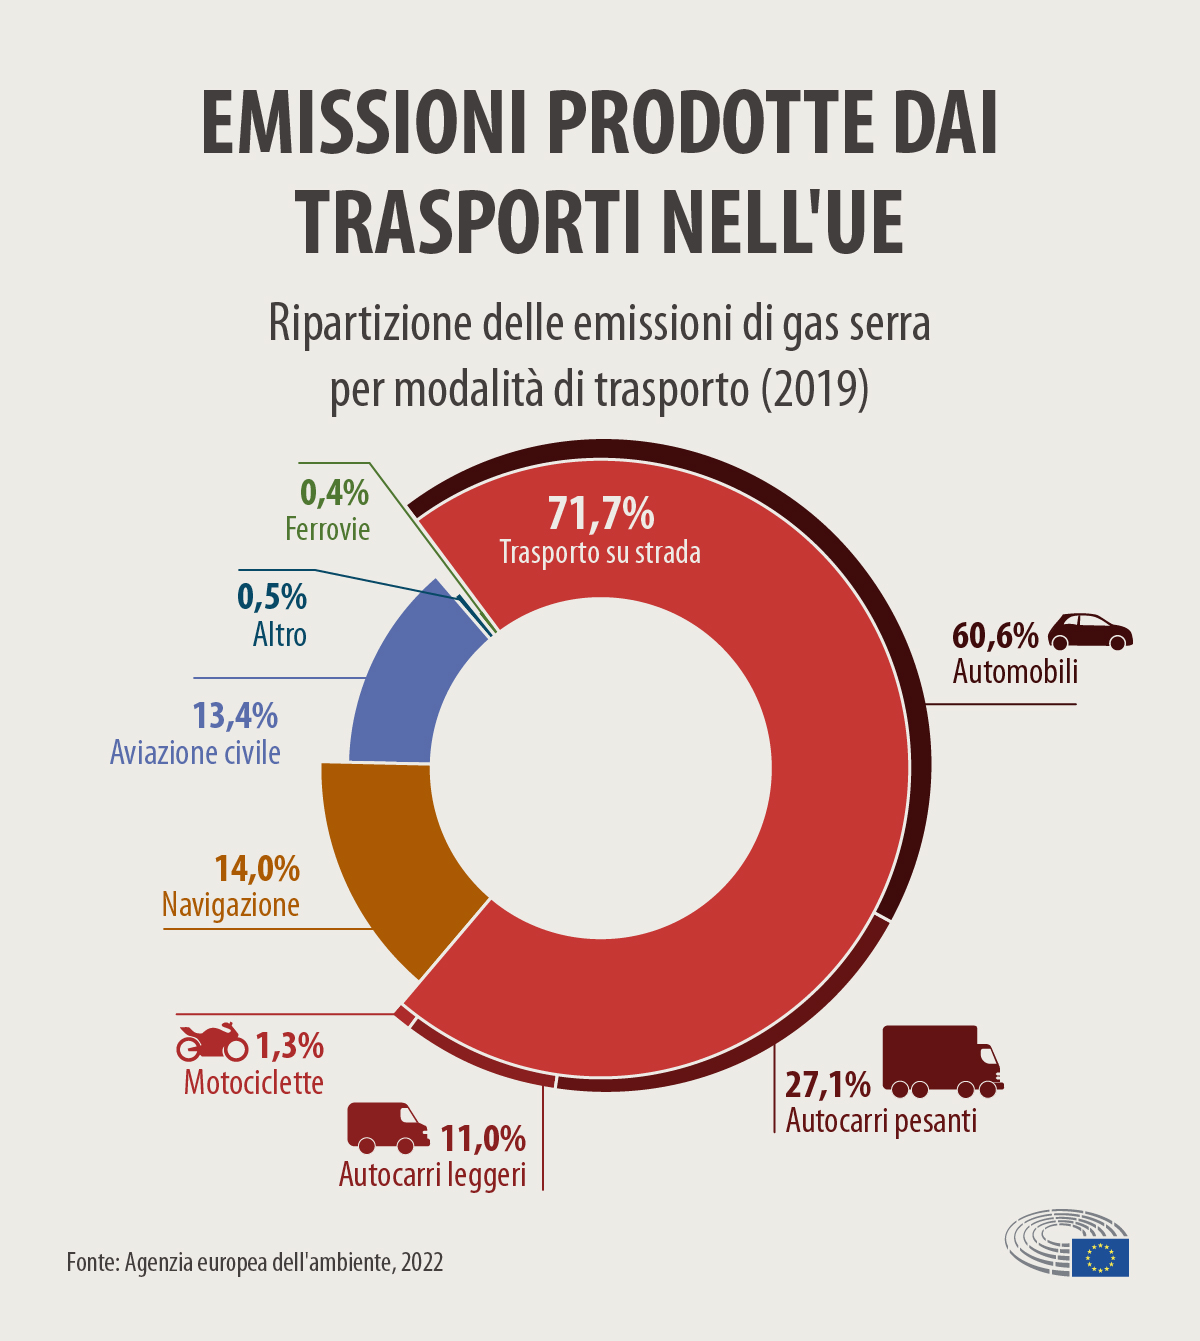 Emissioni prodotte dai trasporti nell'UE. Ripartizione delle emissioni di gas serra per modalità di trasporto nel 2019